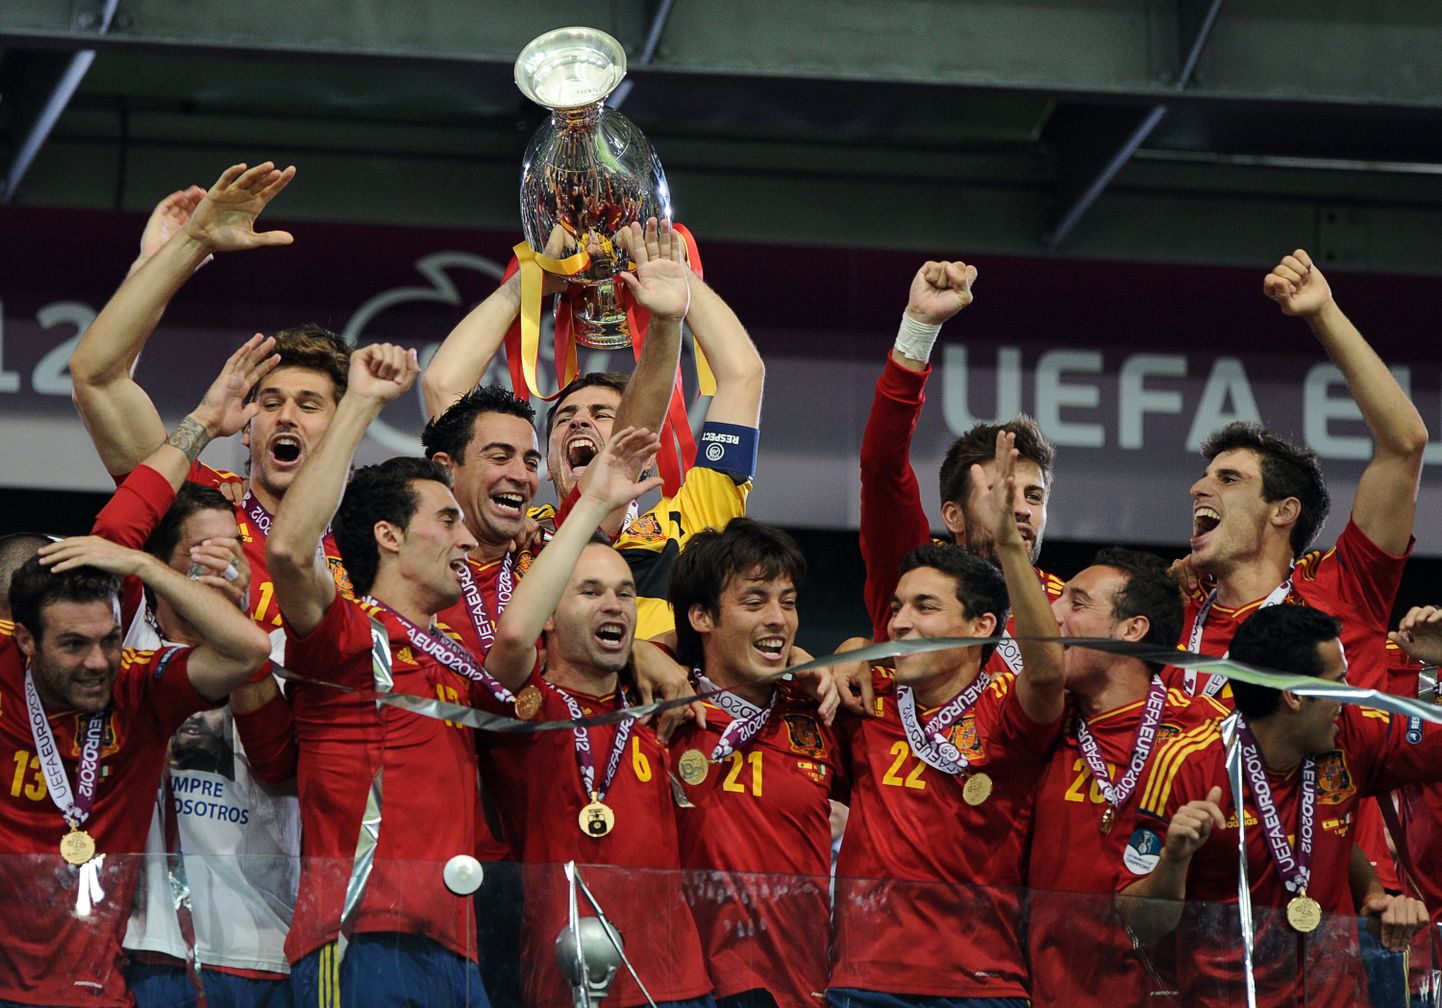 Hispaania jalgpallikoondis tähistamas 2012. aasta EM-tiitlit.